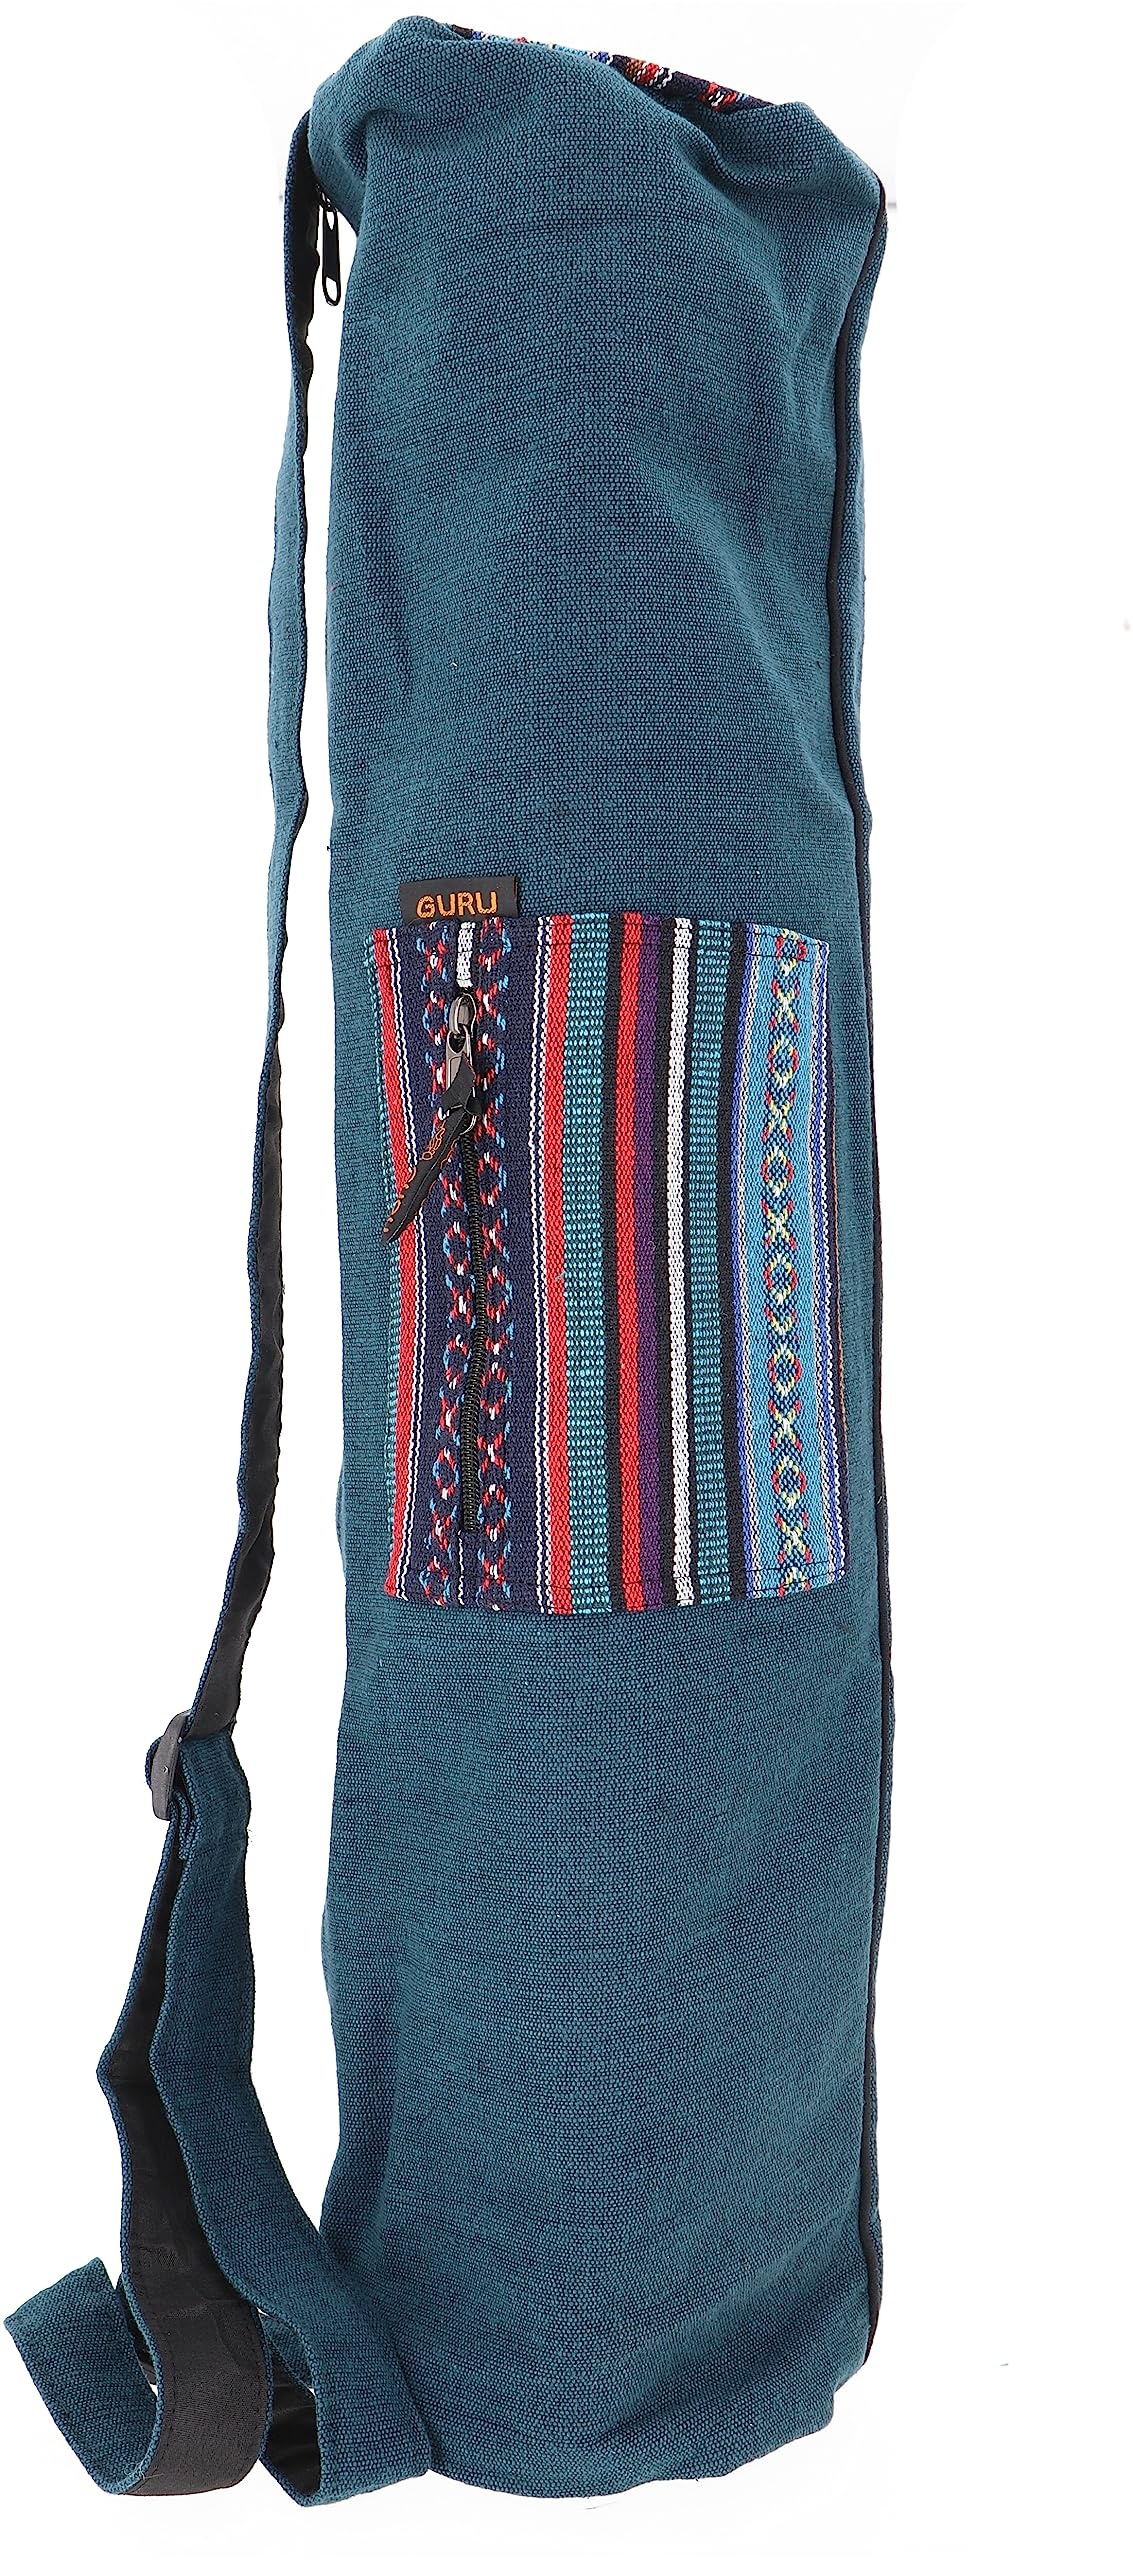 GURU SHOP Boho Yogamatten-Tasche, Yogatasche aus Nepal - Petrol, Herren/Damen, Blau, Baumwolle, Size:One Size, 70x24x14 cm, Taschen für Yogamatten - Einheitsgröße